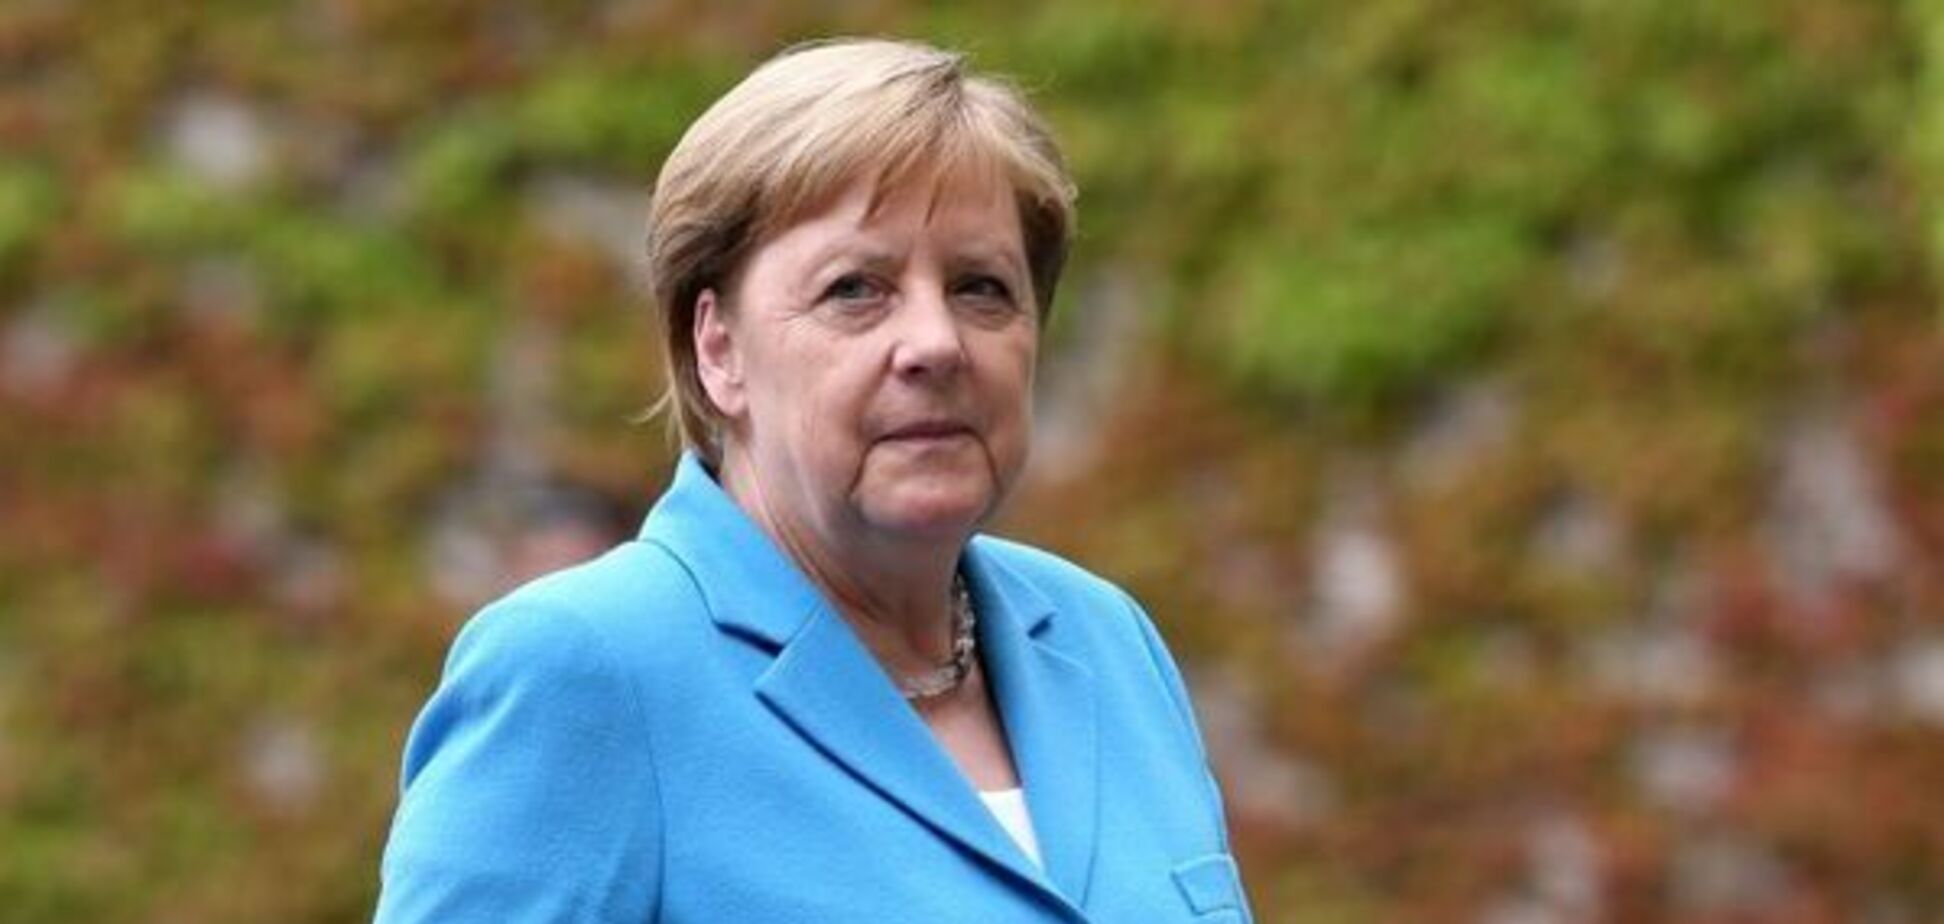 Болезнь Меркель: канцлер сделала откровенное заявление